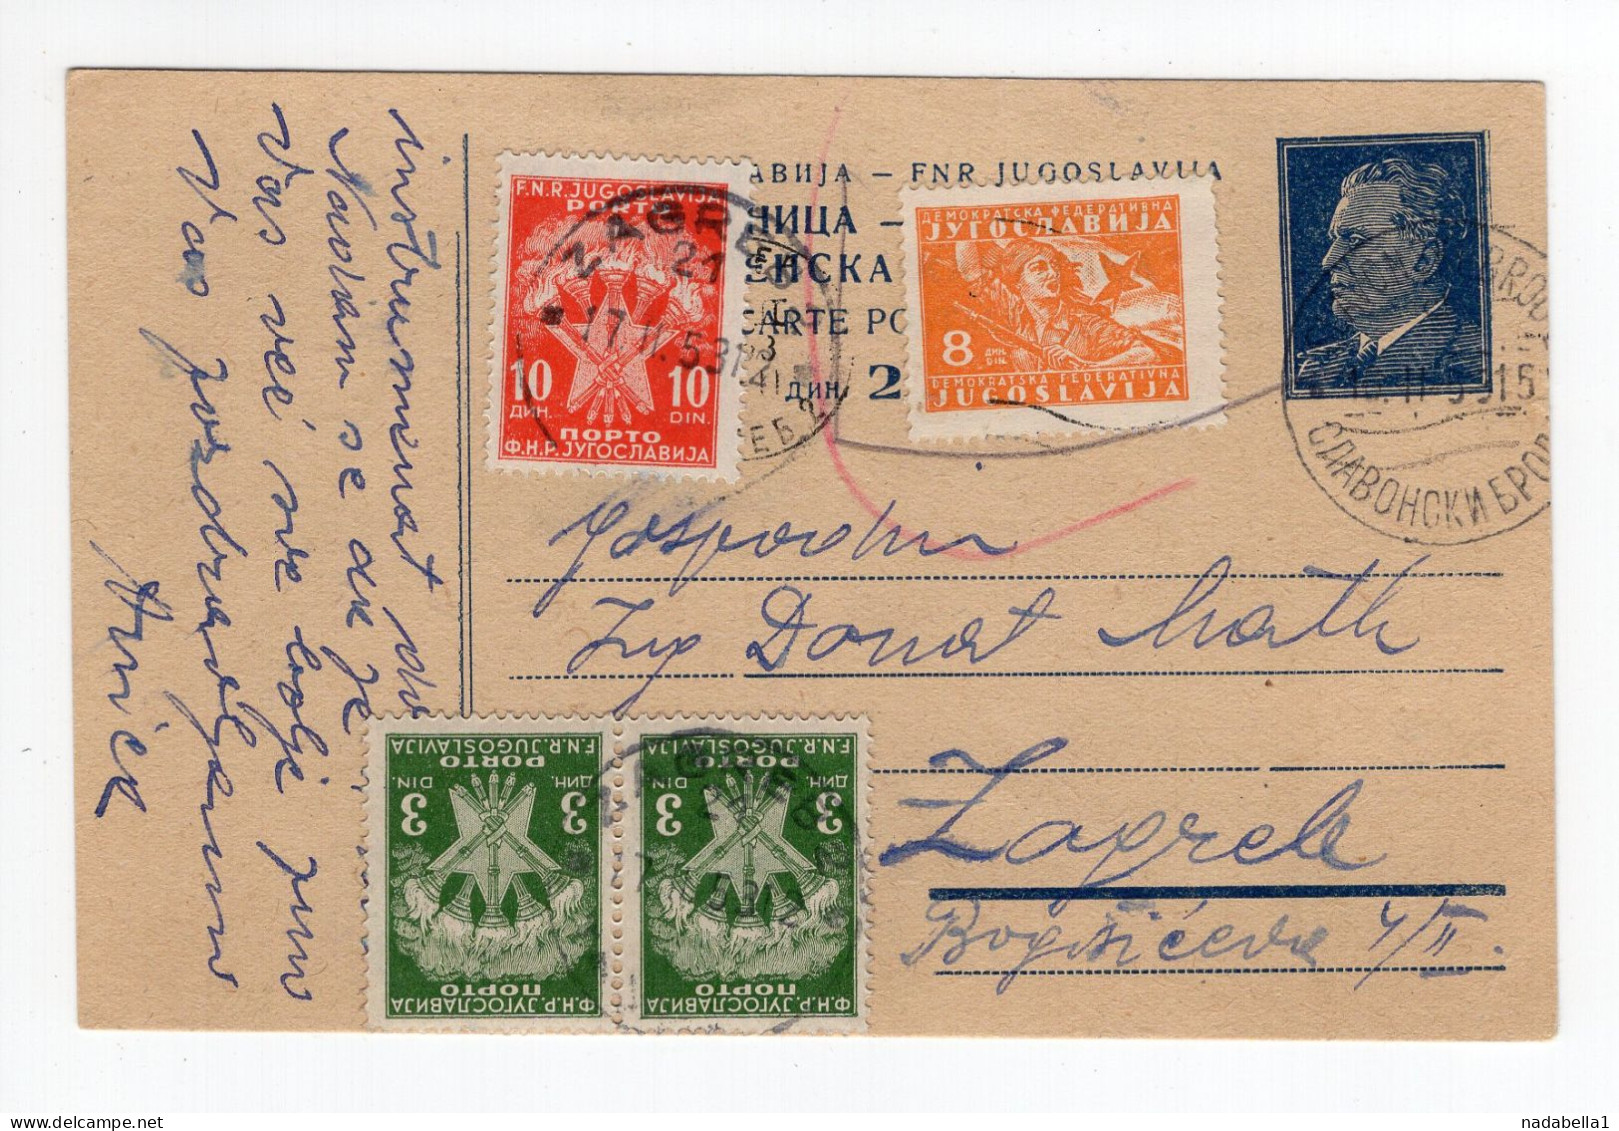 1953. YUGOSLAVIA,CROATIA,SLAVONSKI BROD,STATIONERY CARD,USED,POSTAGE DUE IN ZAGREB - Portomarken